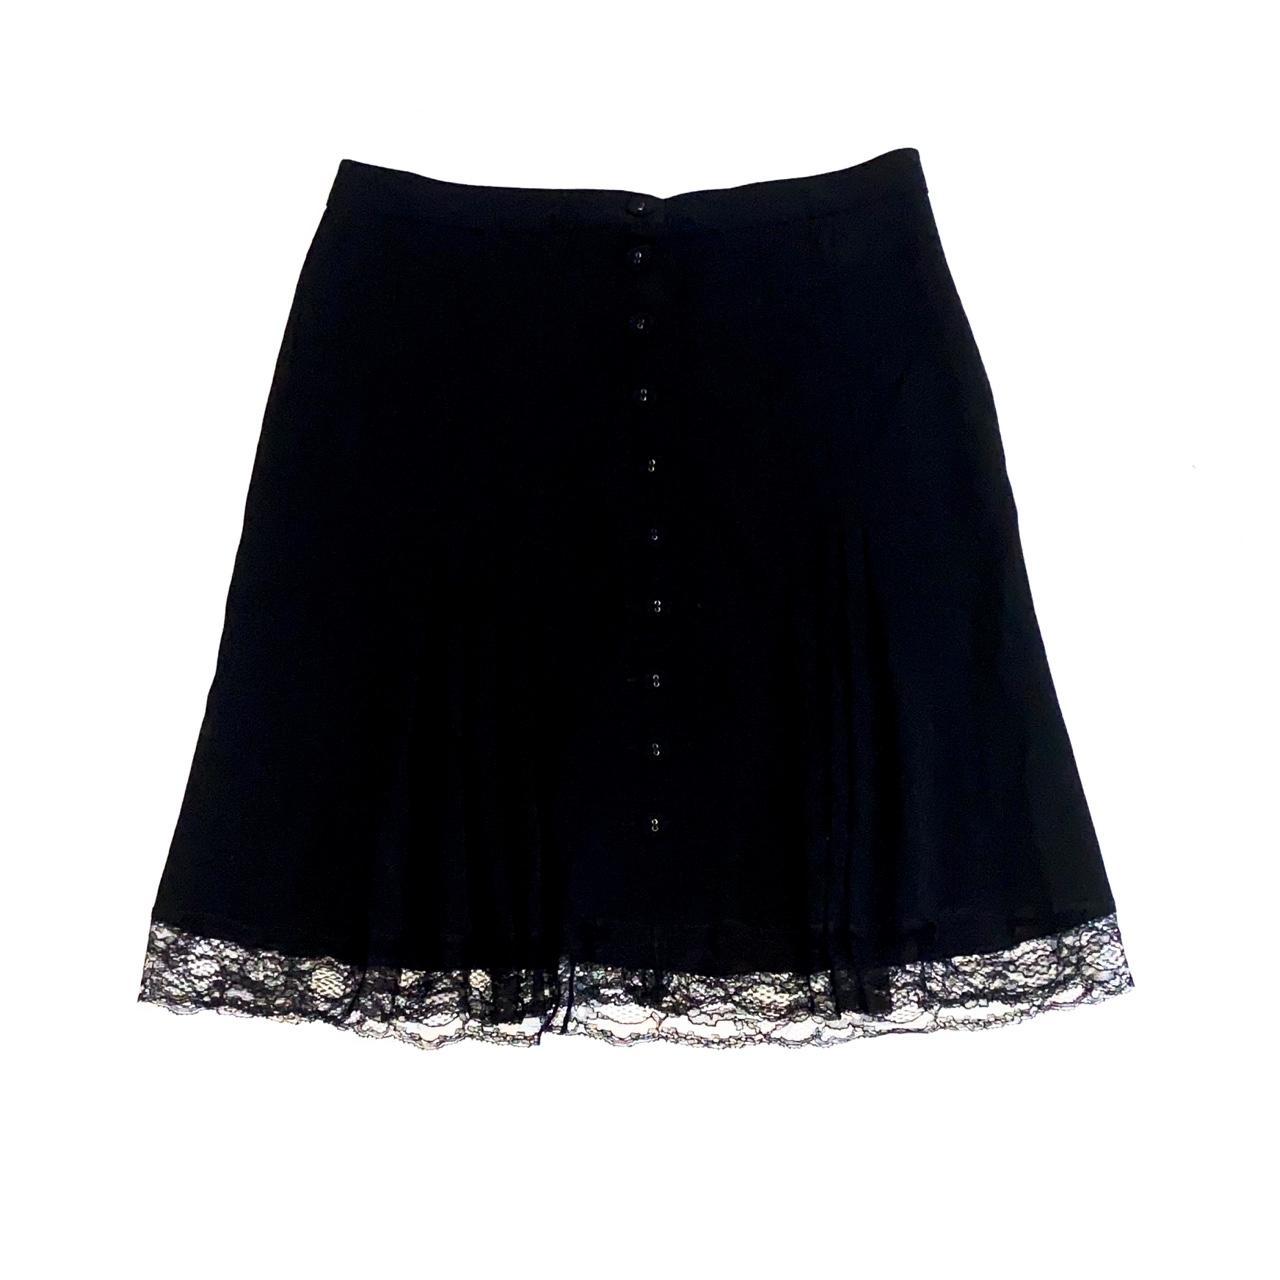 Moschino Cheap & Chic Women's Black Skirt (3)